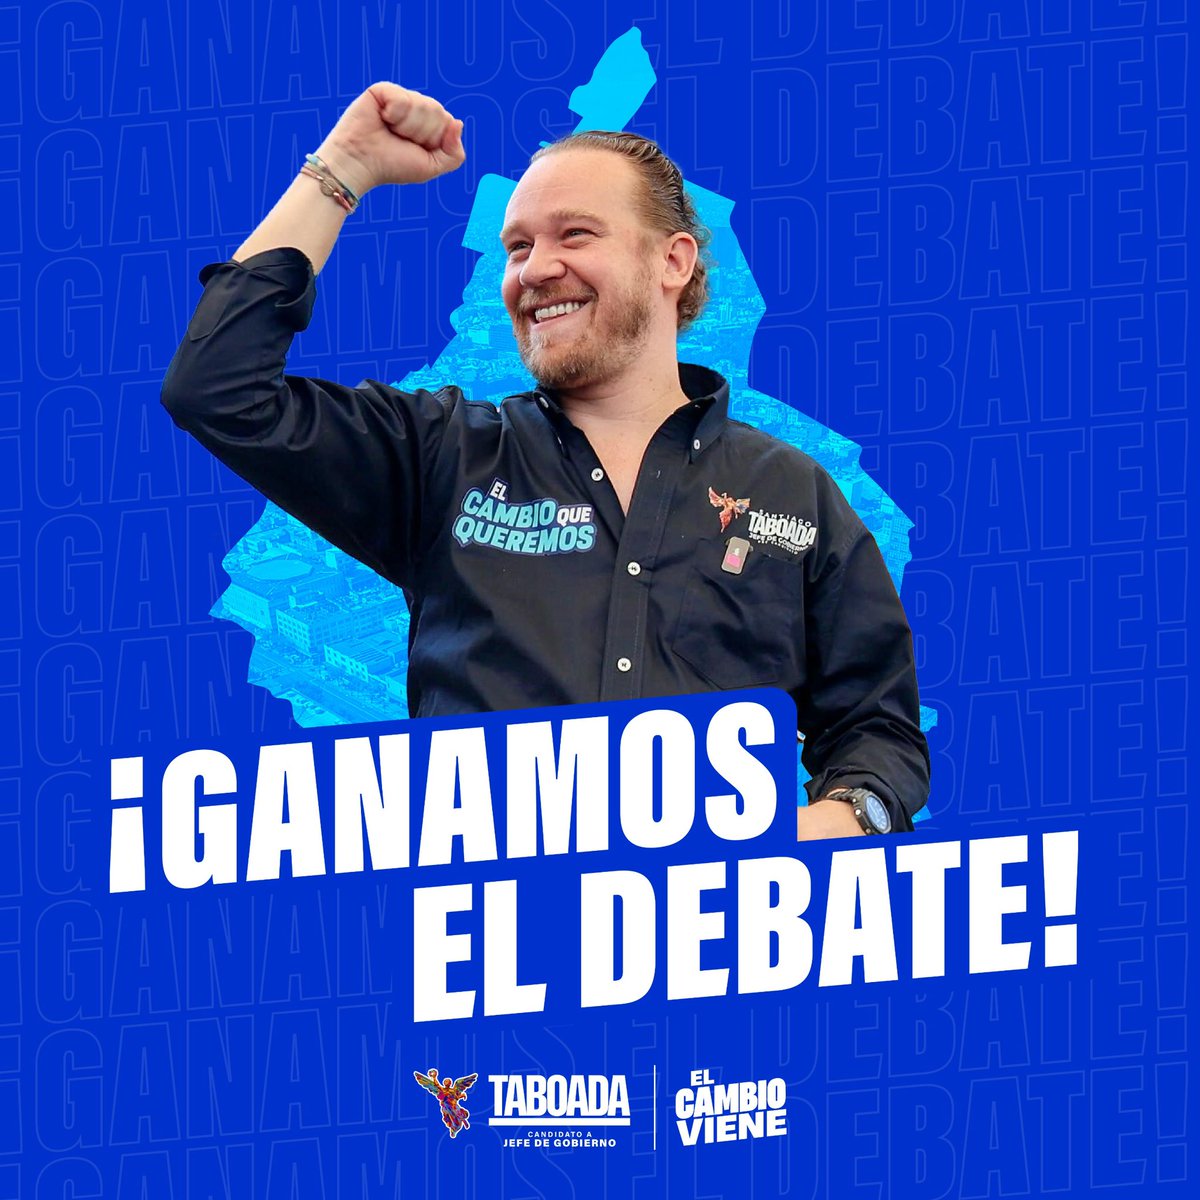 En el #DebateChilango el triunfo de @STaboadaMx es evidente y con el apoyo ciudadano se convertirá en el futuro Jefe de Gobierno de la Ciudad de México. 

¡EL PRÓXIMO 2 DE JUNIO VOTA POR EL CAMBIO! 💙🛡️🫰🏽

#ElJefeTaboada 
#TaboadaEsSeguridad 
#ElCambioViene 
#VotaPAN